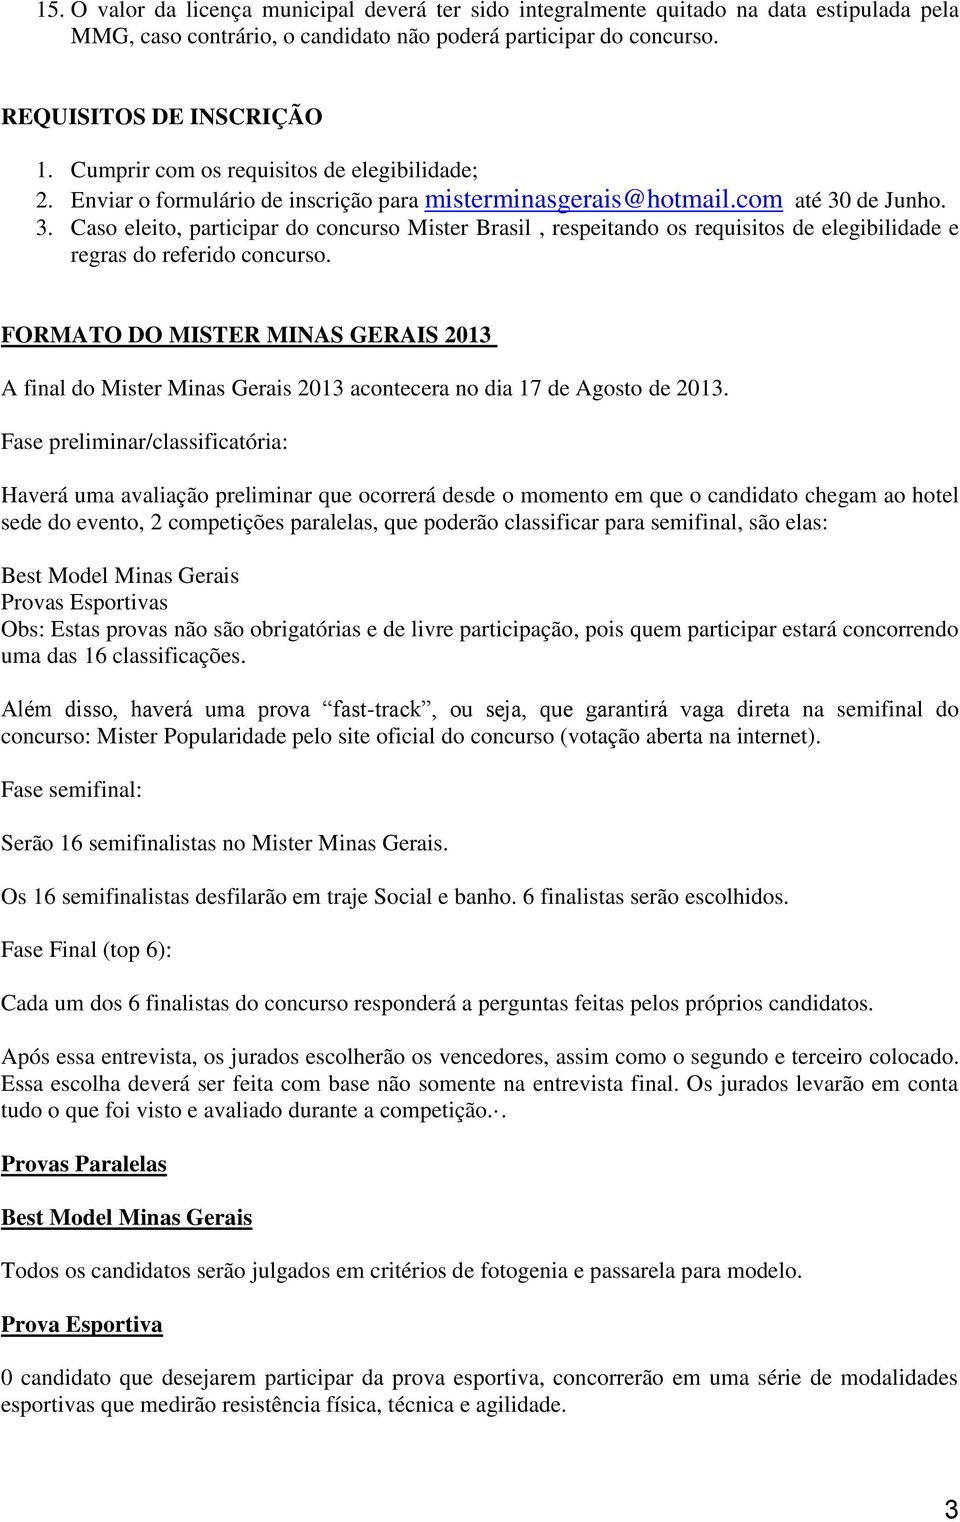 de Junho. 3. Caso eleito, participar do concurso Mister Brasil, respeitando os requisitos de elegibilidade e regras do referido concurso.